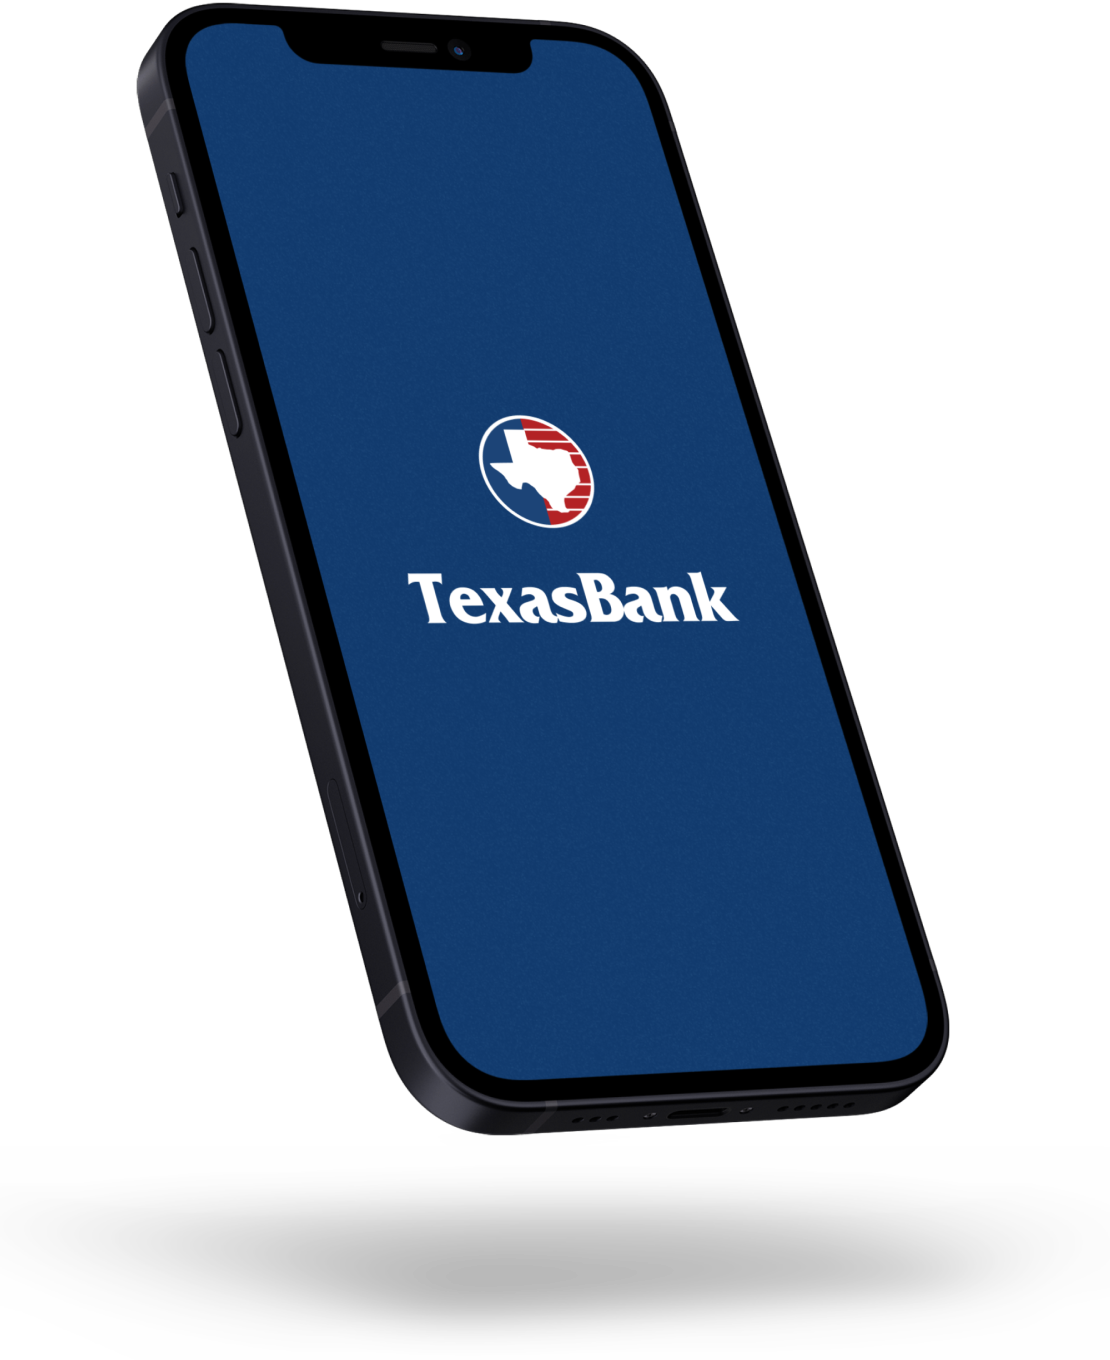 mobile phone with texasbank icon